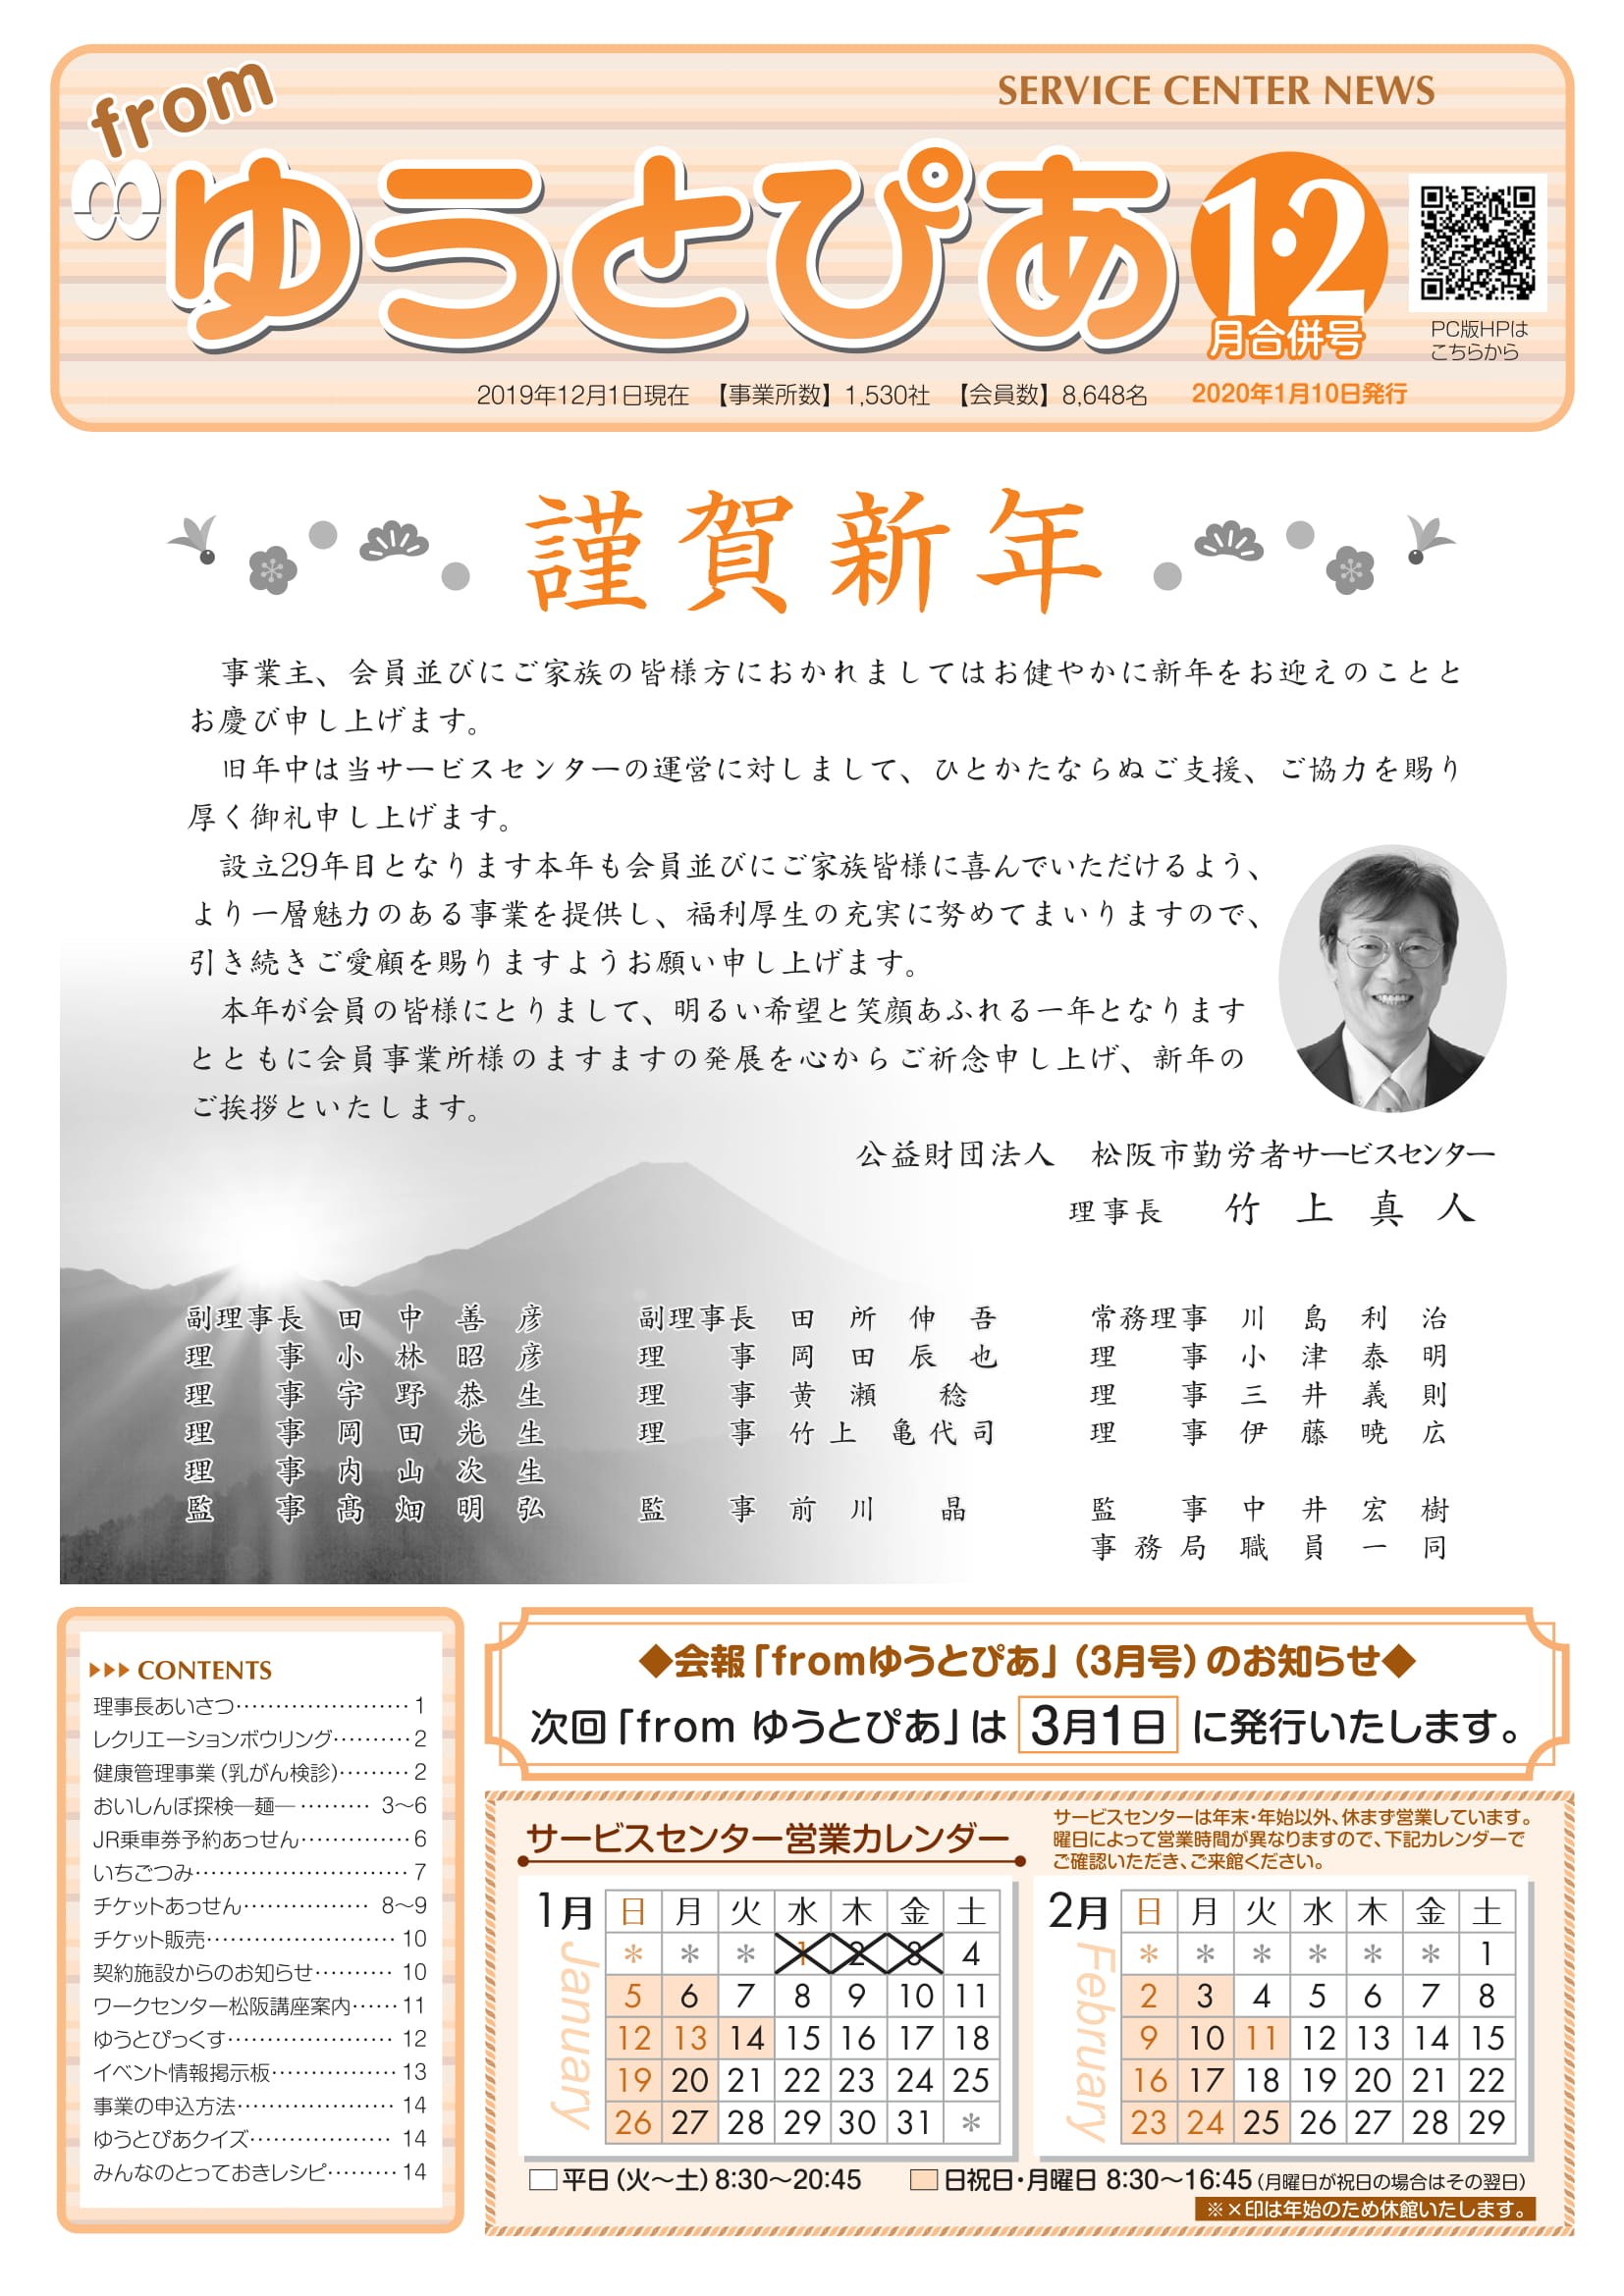 年度1 2月合併号 公益財団法人 松阪市勤労者サービスセンター